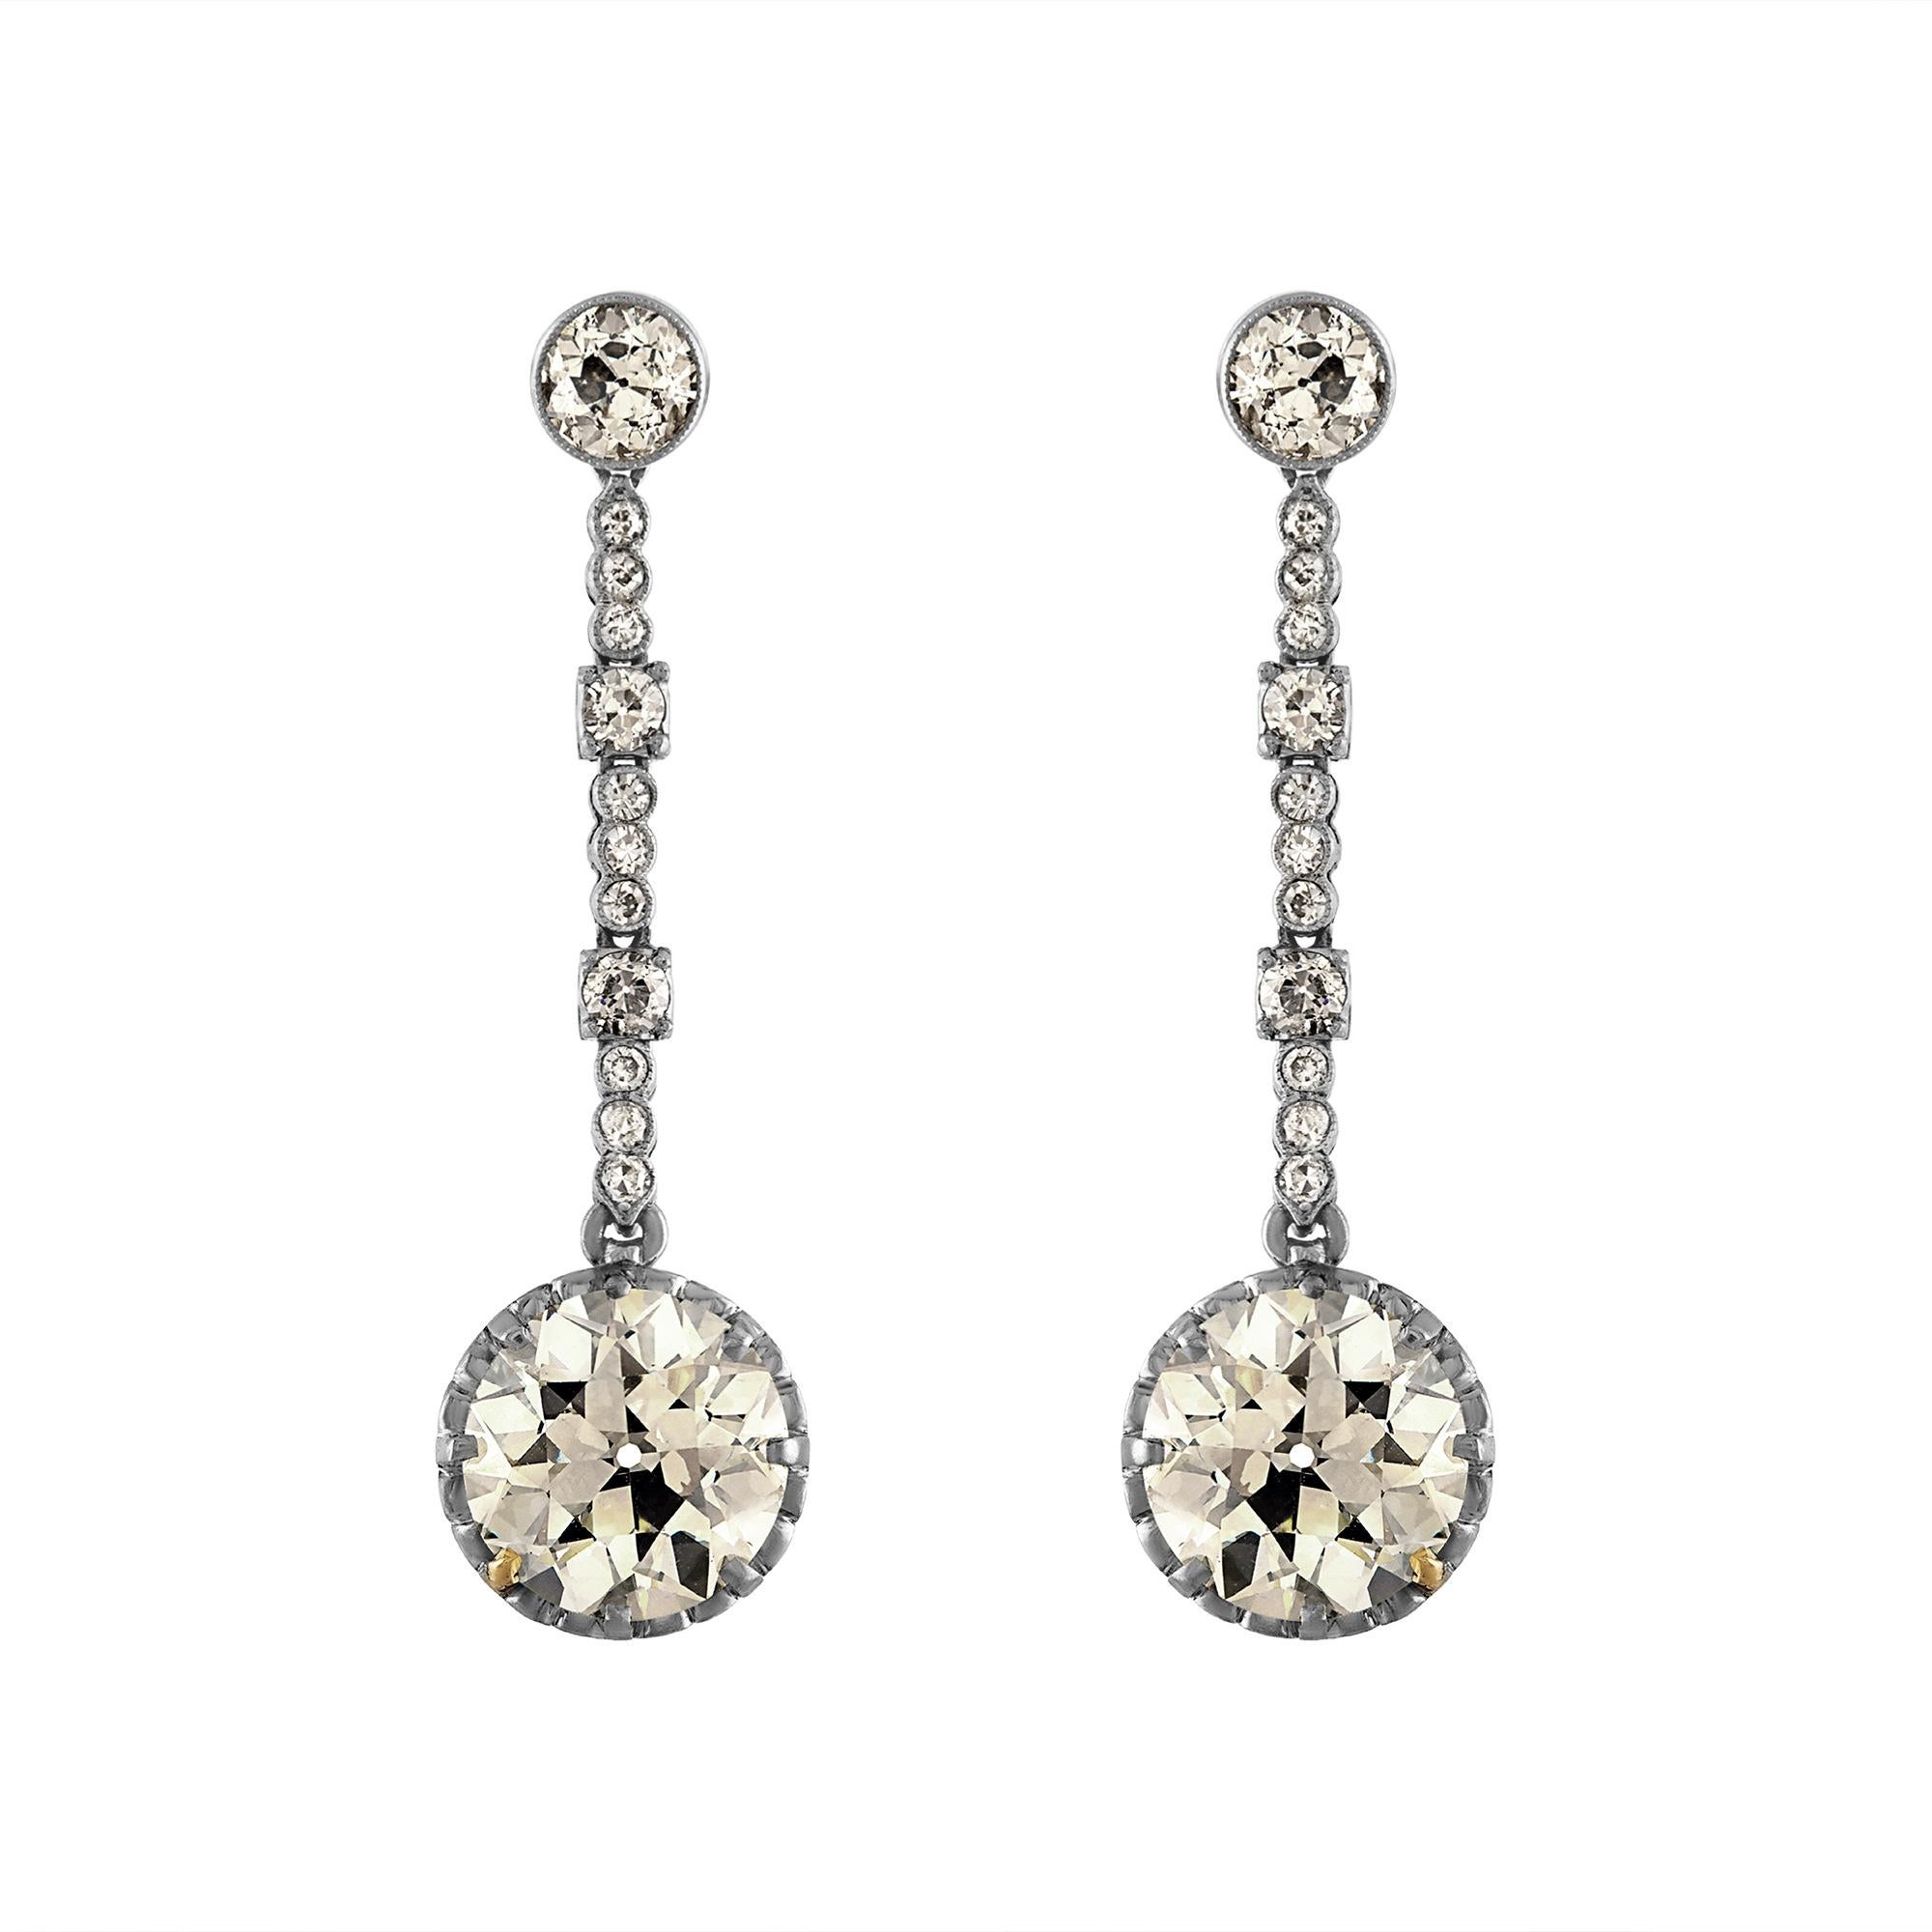 Ein schlankes und sexy Paar ART DECO 6.53ctw Diamond Drop Earrings in Platin und Gold, aus CIRCA 1920er Jahren. 
Ein einzigartiges und exquisites Paar dieser authentischen Art-Déco-Ohrringe wird Ihnen den Atem rauben! Die Platin-Dangles sind auf